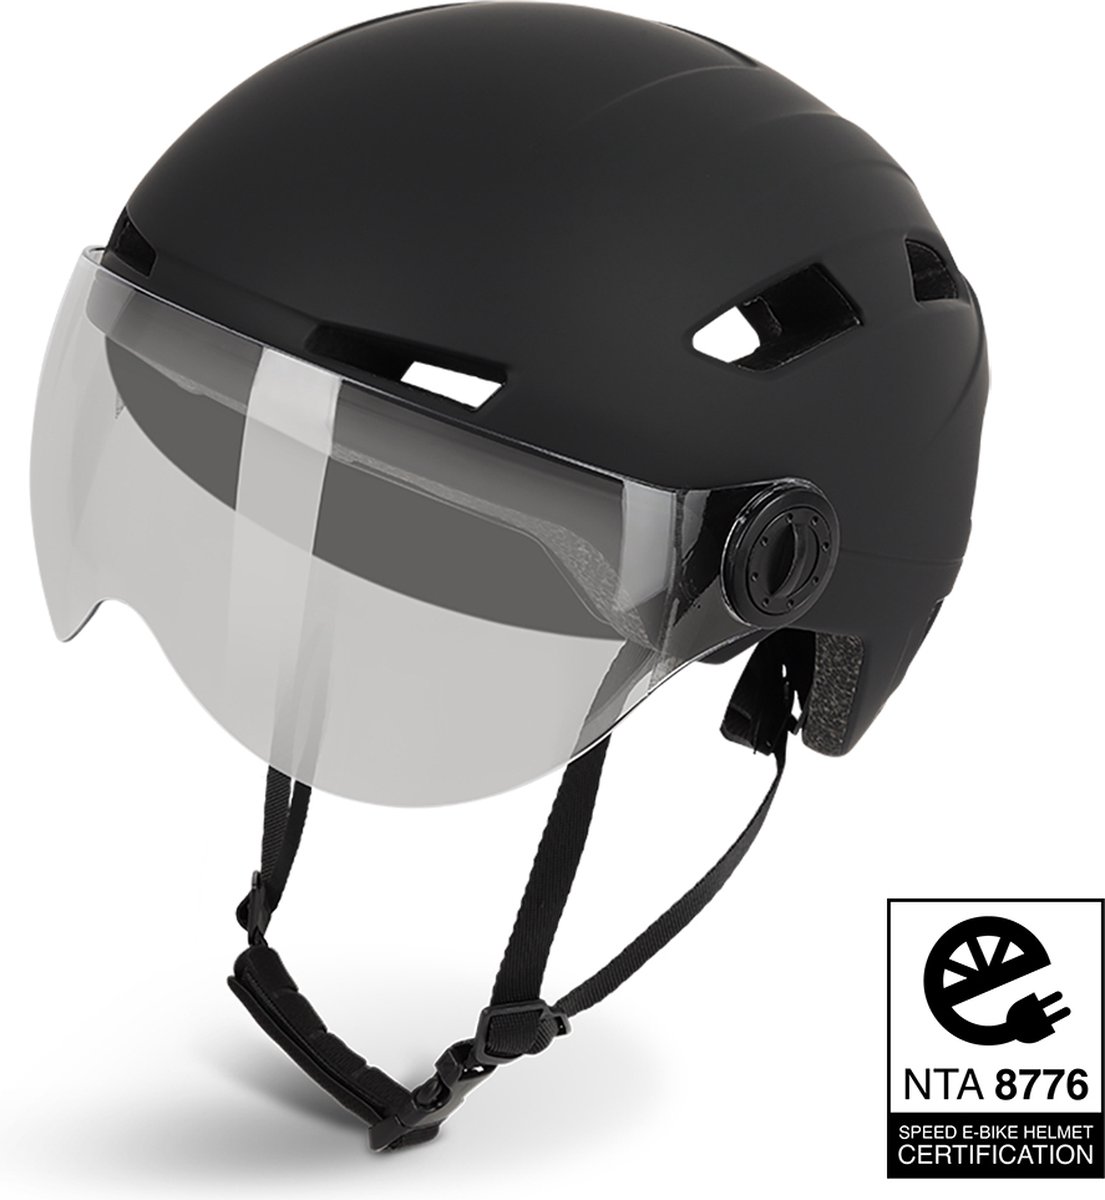 Lightyourbike ® ROADSTER - Speed Pedelec Helm met vizier & verlichting - NTA 8776 - Helm Snorscooter - Helm Speed Pedelec - Zwart - Maat M